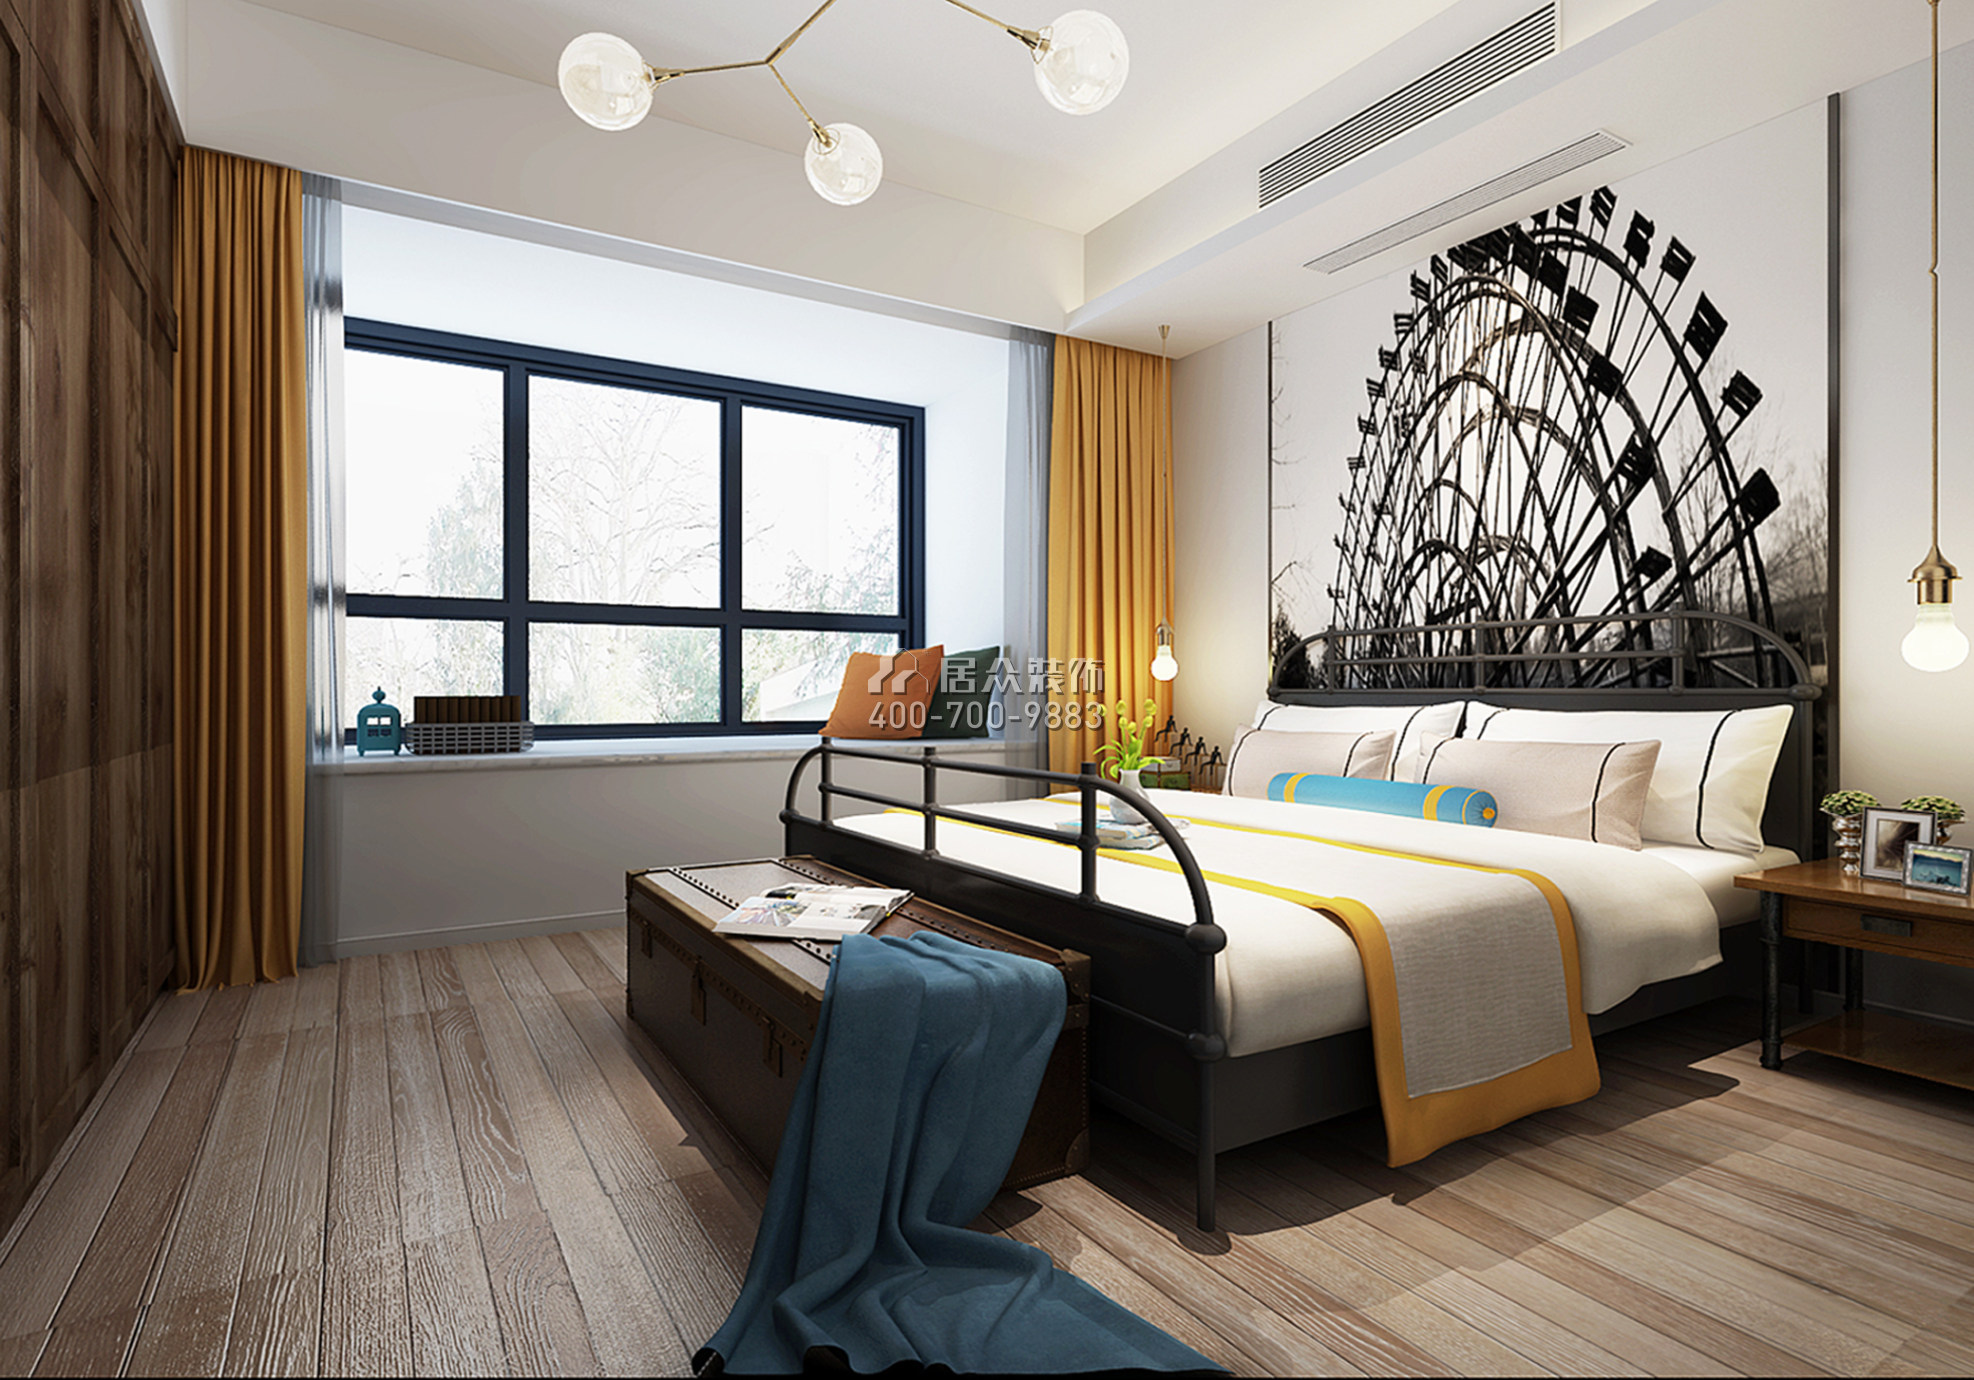 經澤景園130平方米現代簡約風格平層戶型臥室裝修效果圖